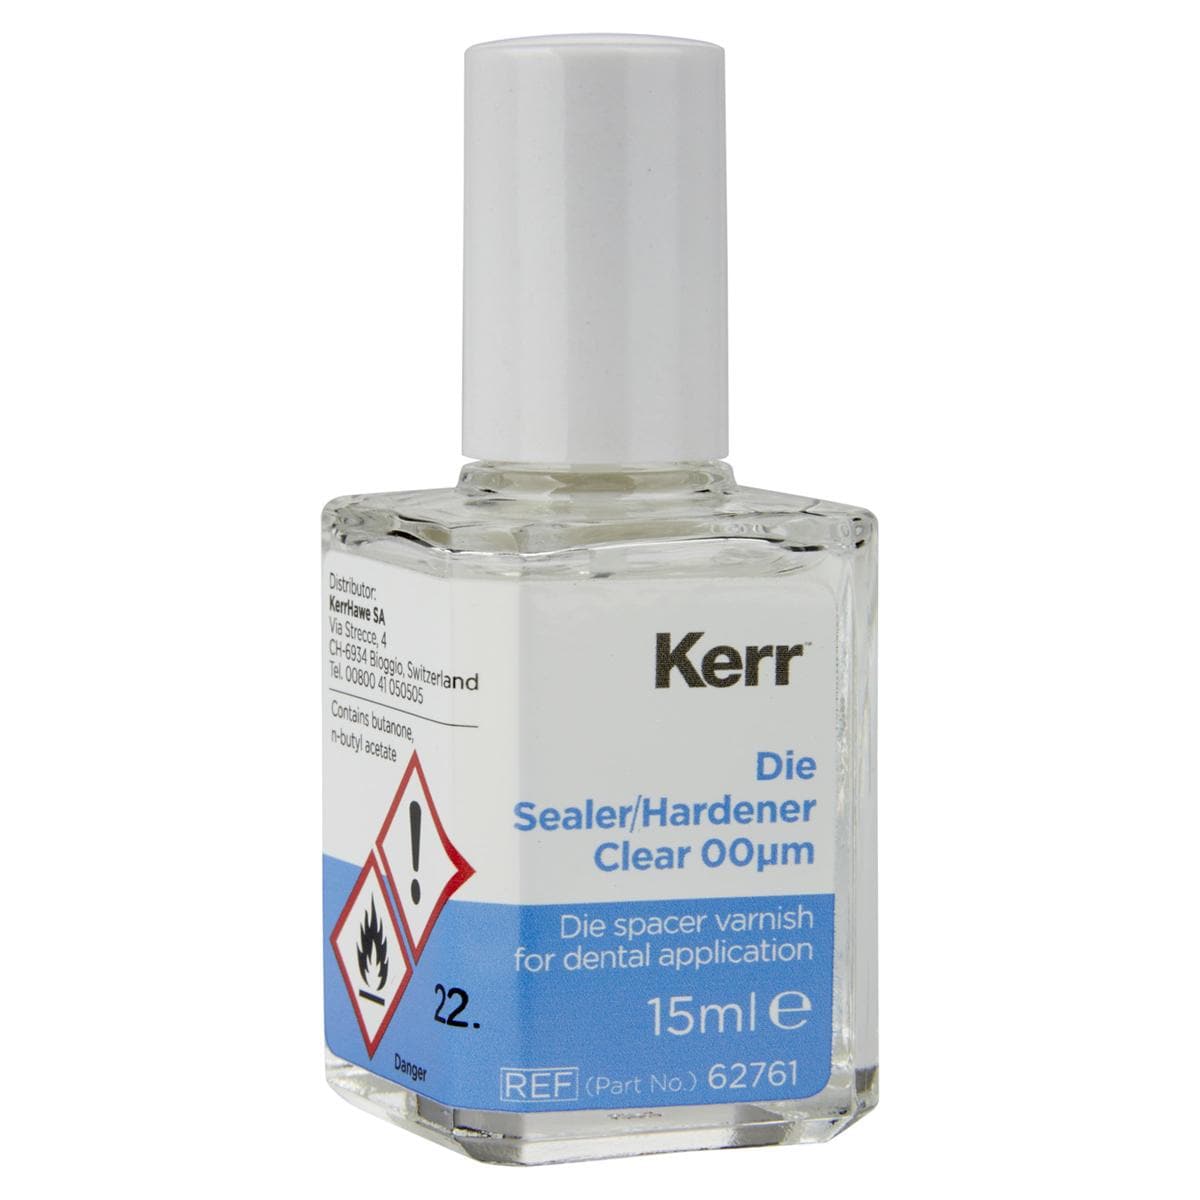 belle de st claire - Die Spacer, Versiegler und Härter - Die Sealer/Hardener, transparent, Flasche 15 ml